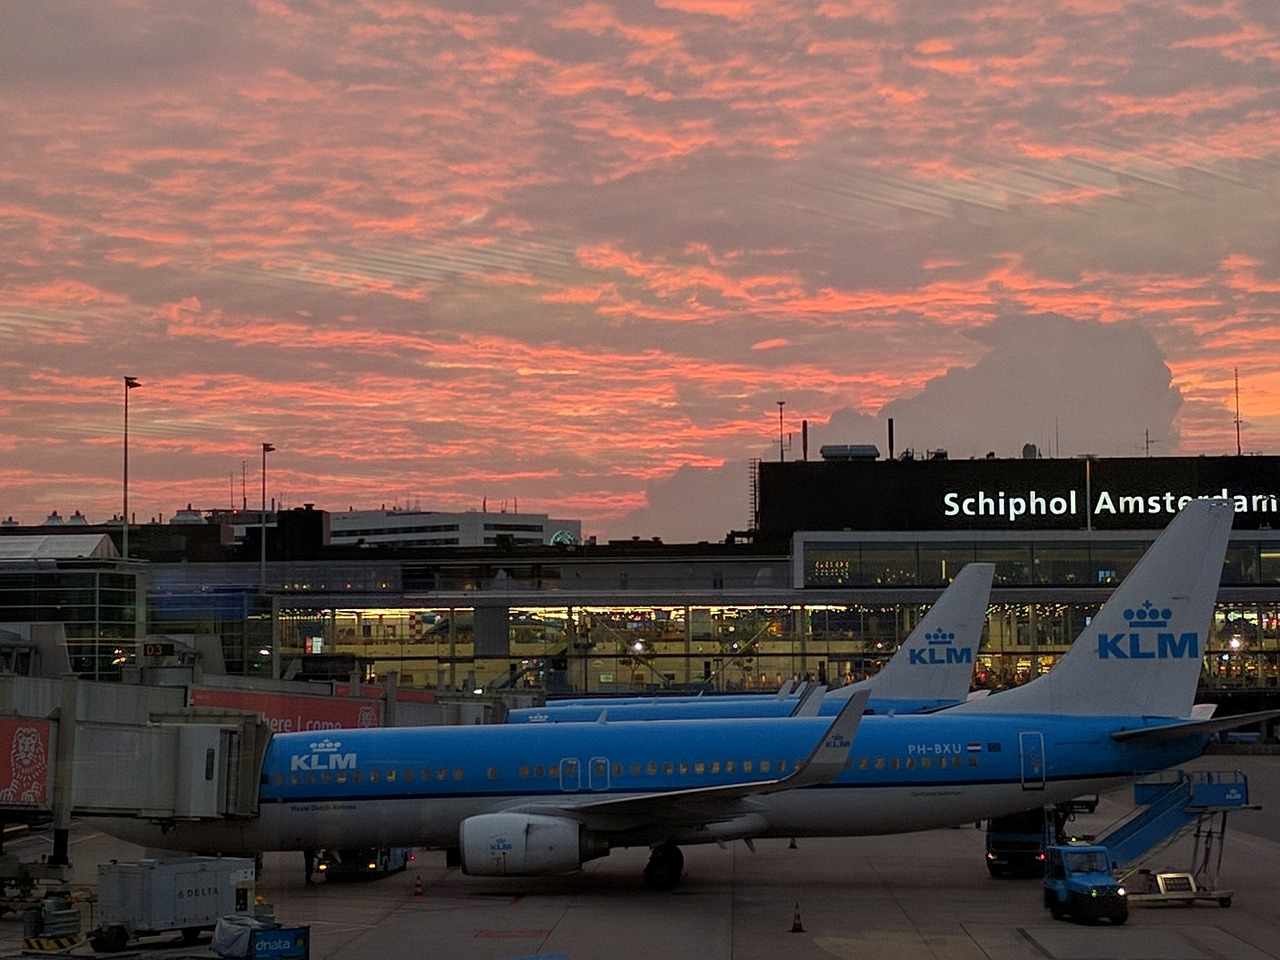 Rinnovabili • Aeroporti sostenibili: Schiphol dice stop a jet privati e voli notturni